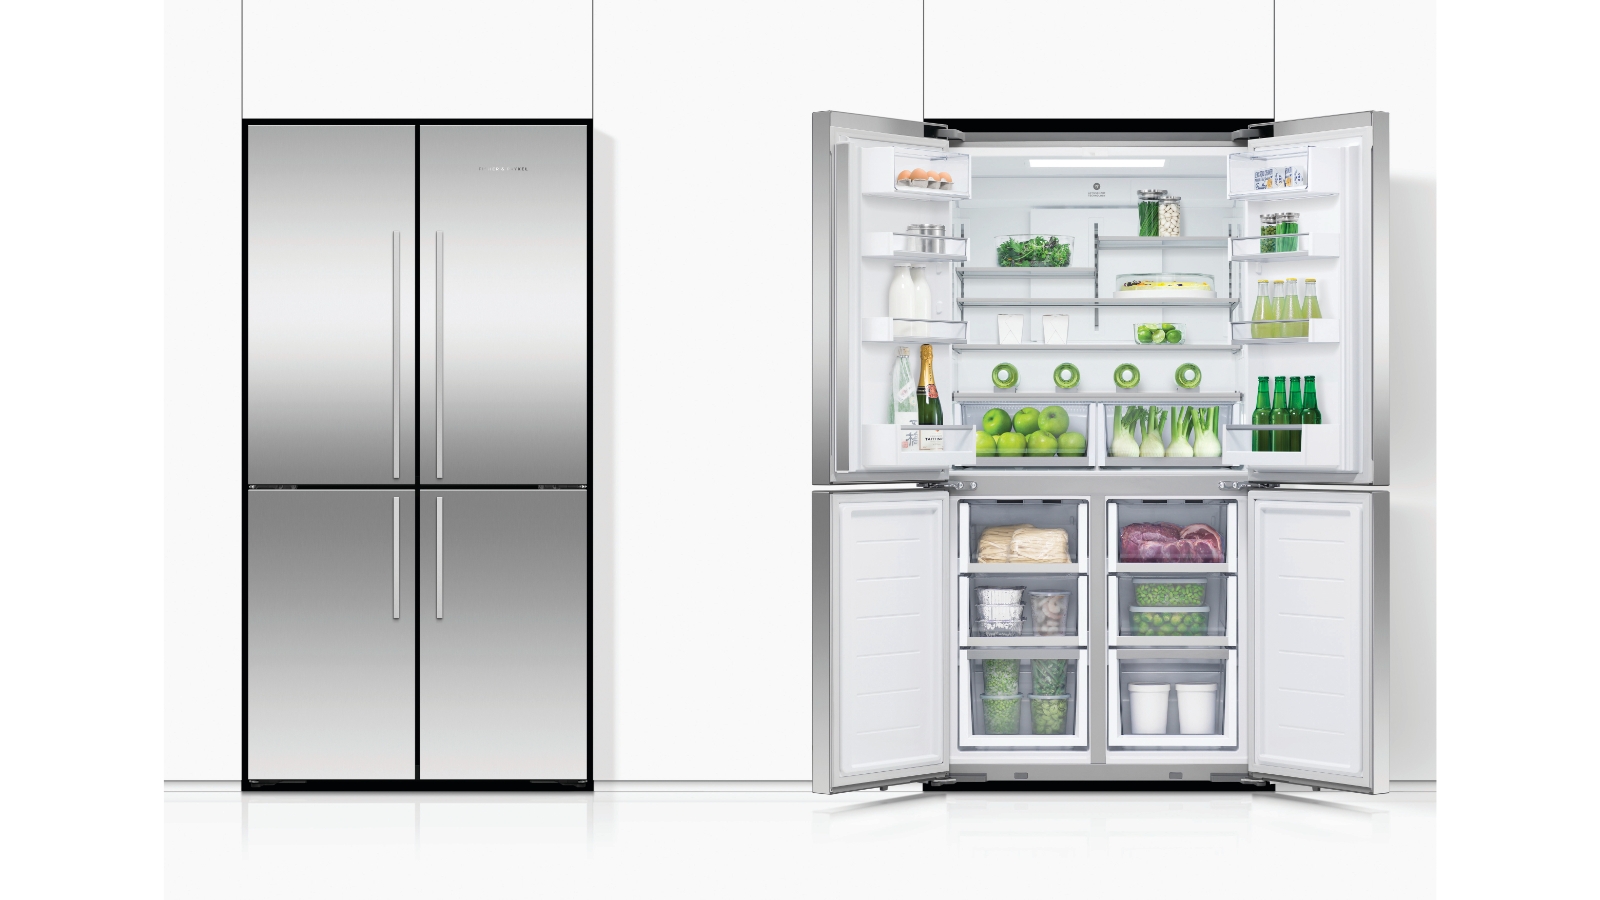 Freestanding Quad Door Refrigerator Freezer, 90.5cm, 538L, Ice & Water